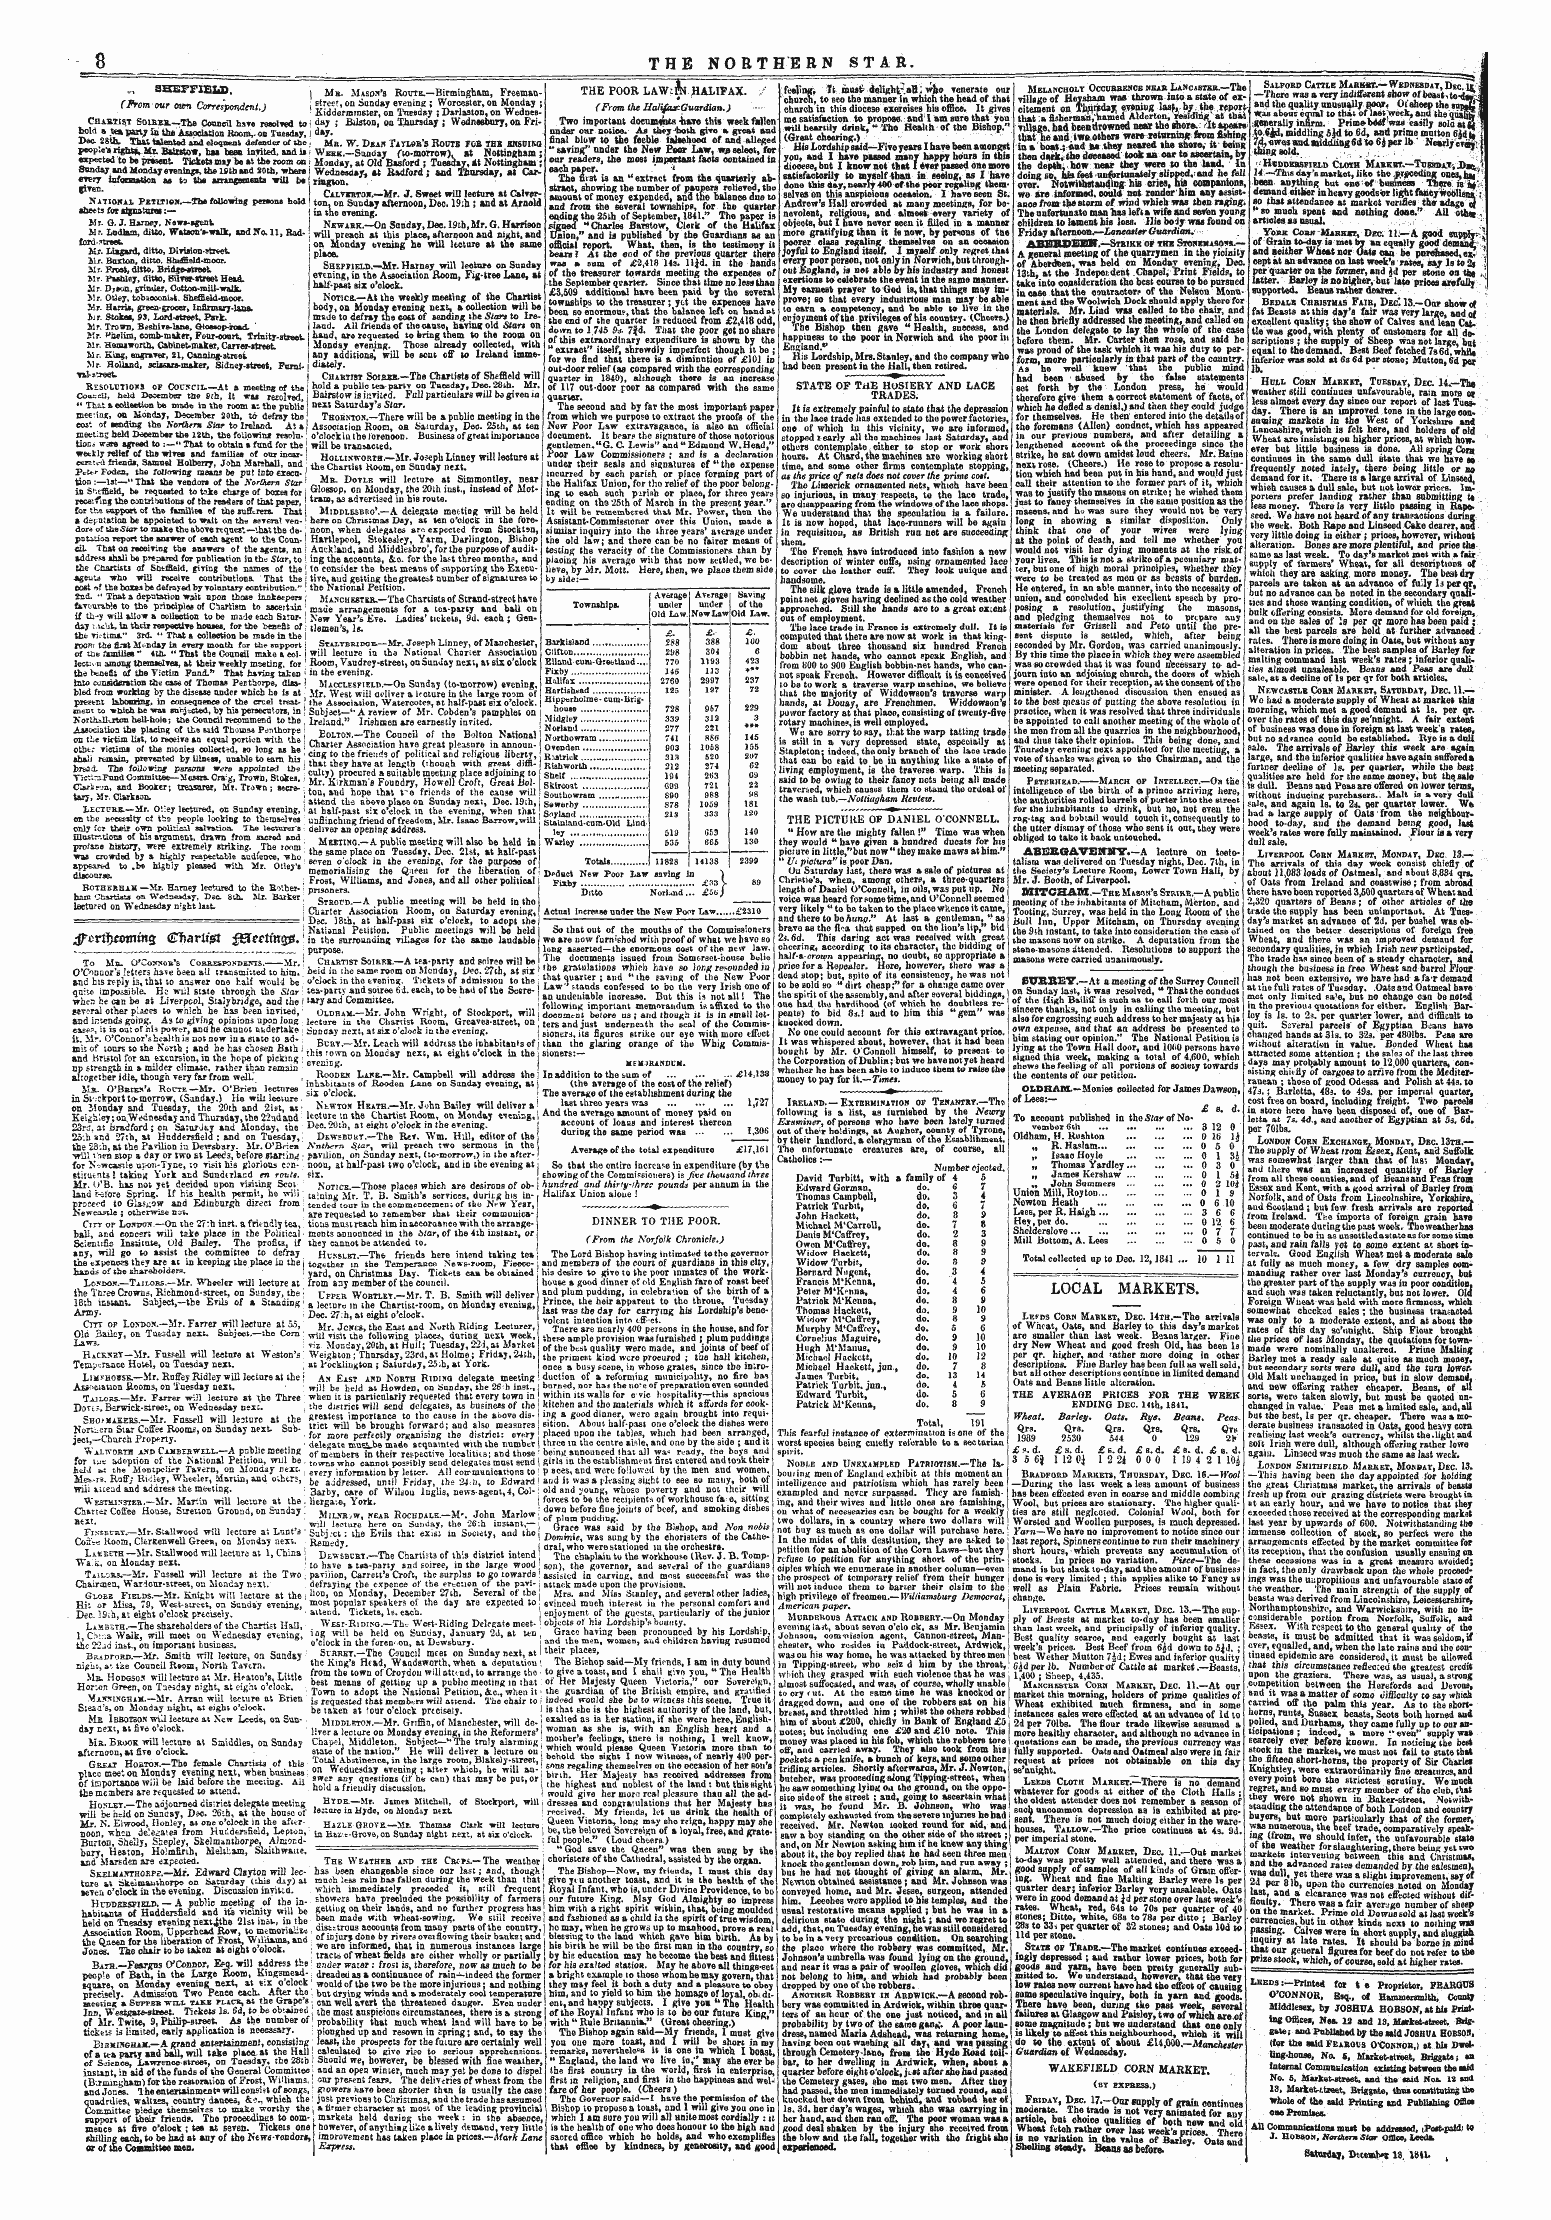 Northern Star (1837-1852): jS F Y, 3rd edition - Tfovft&Gt;Ttmm$ Cfiarltjetf $3eetinq&